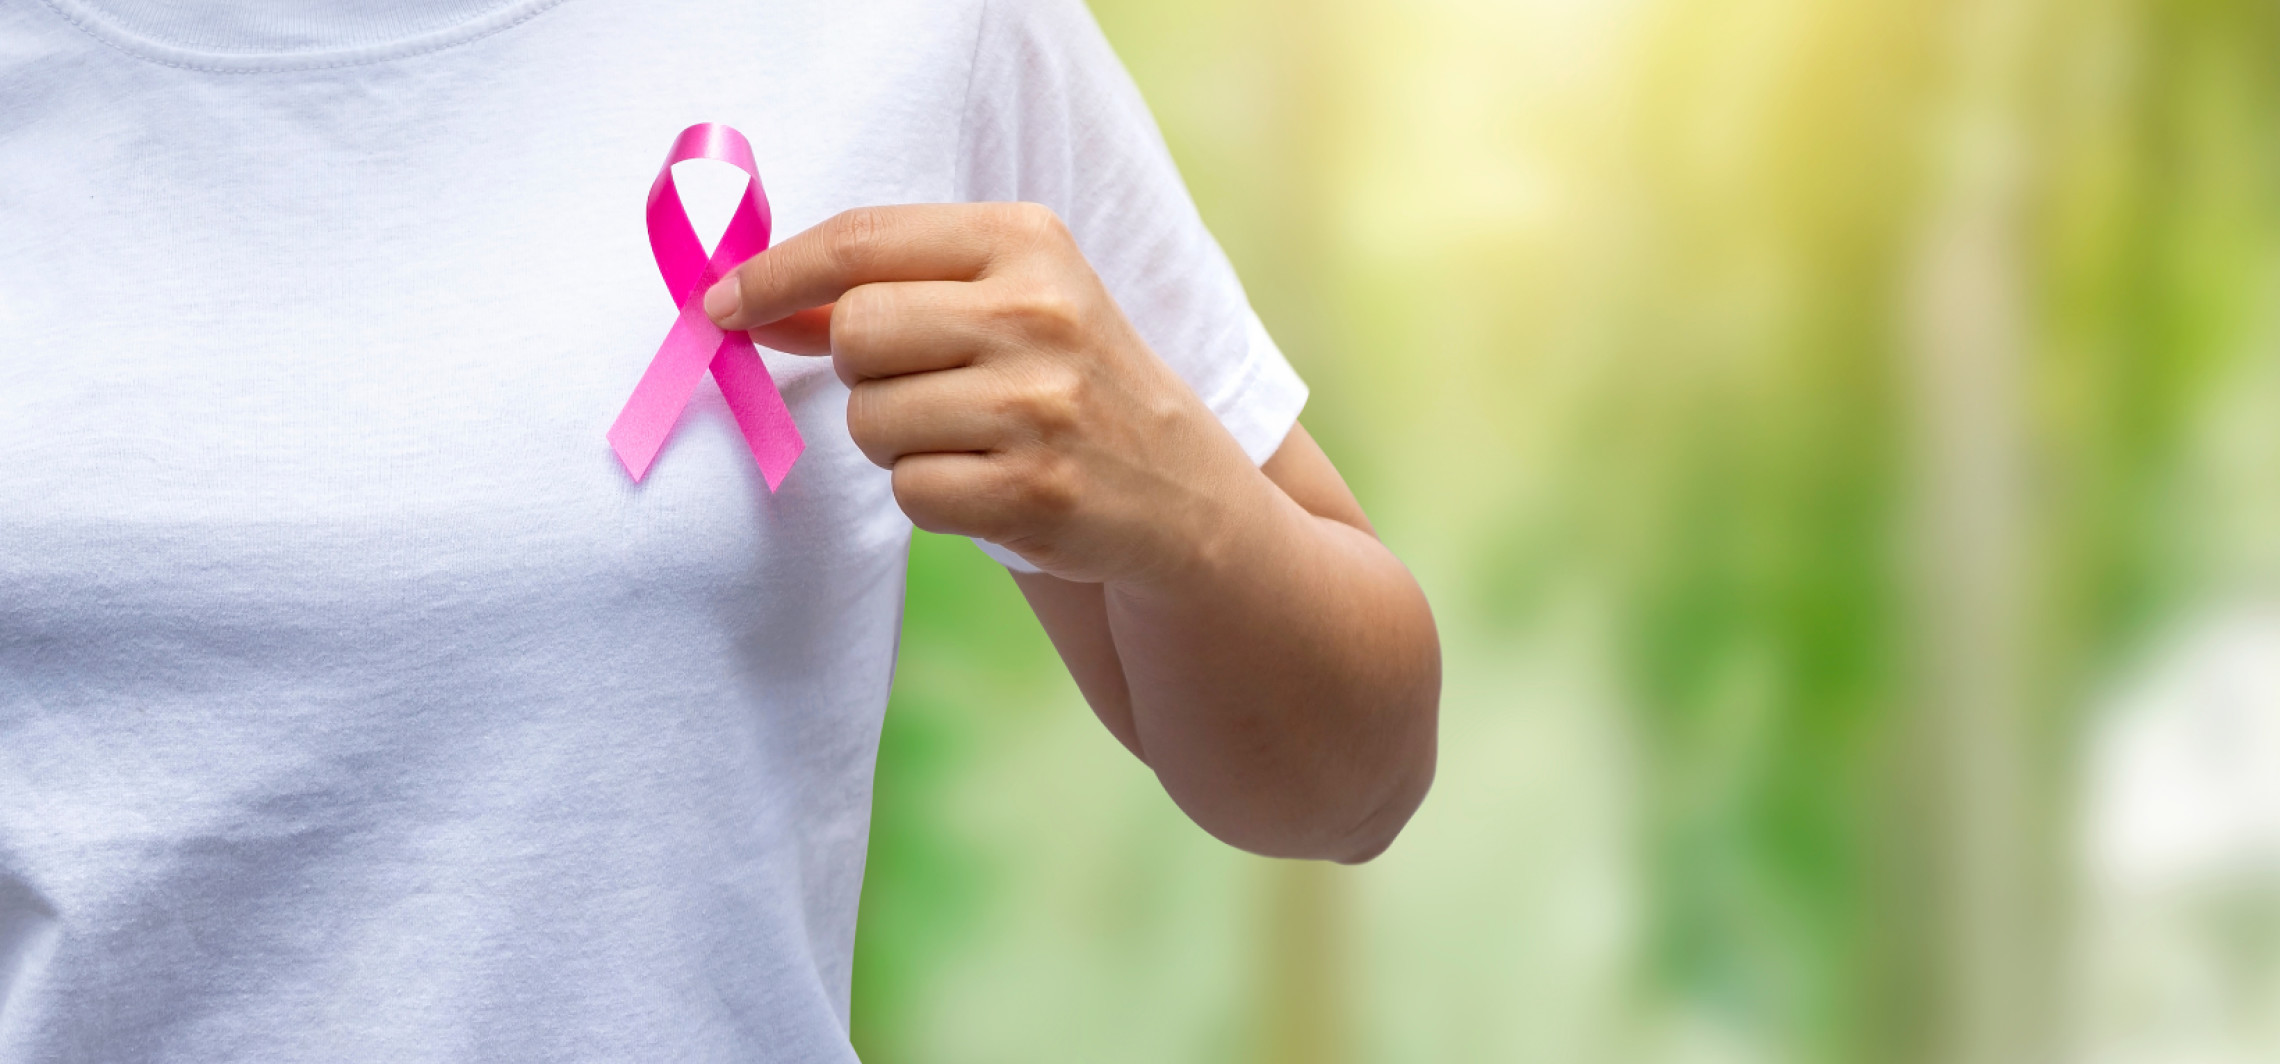 Inowrocław - Będzie można za darmo wykonać mammografię